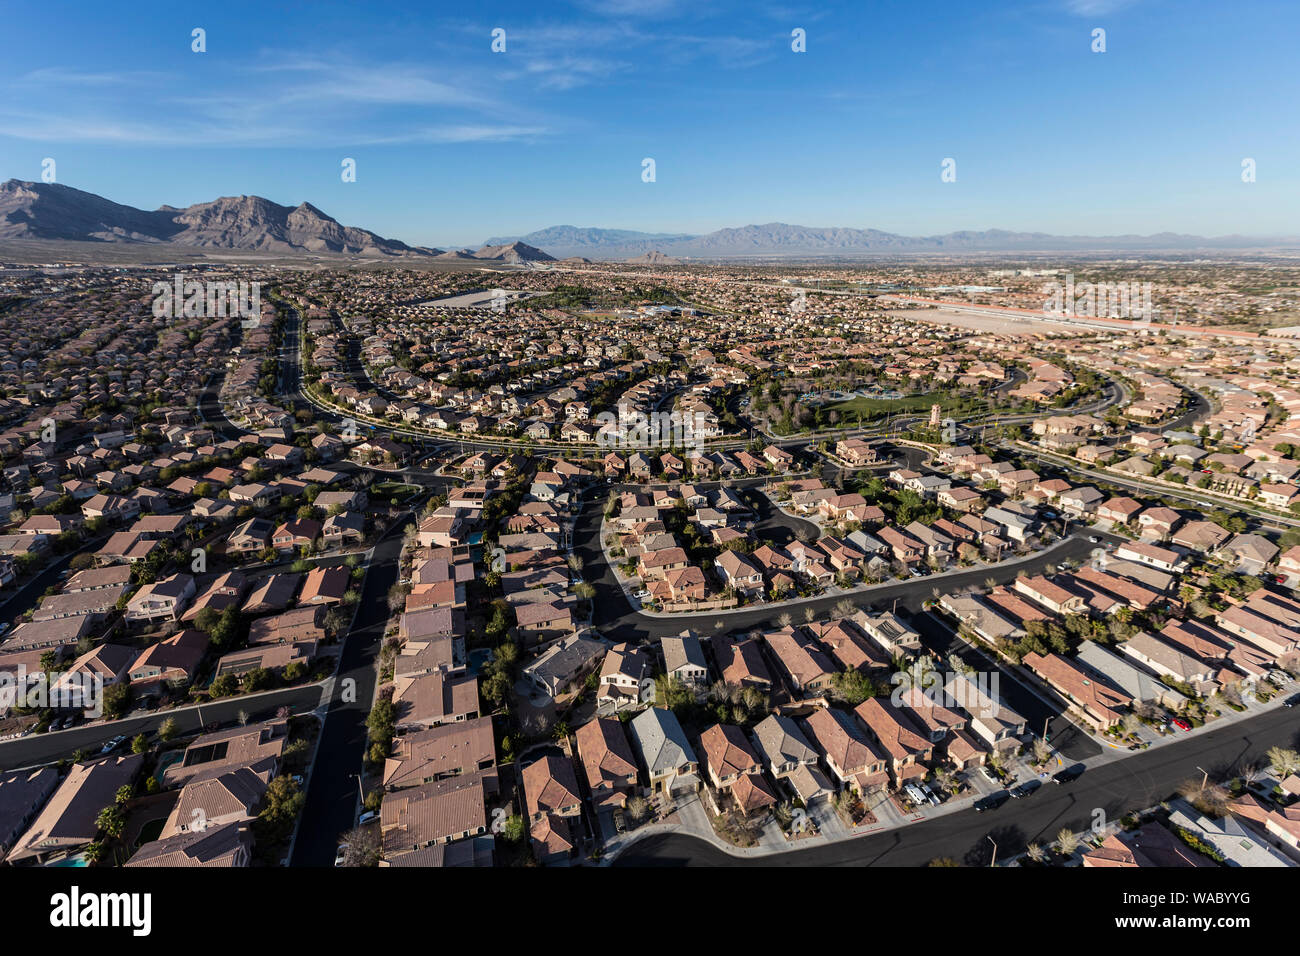 Desert Outside Las Vegas Nevada Stock Image - Image of scenic, environment:  157750221